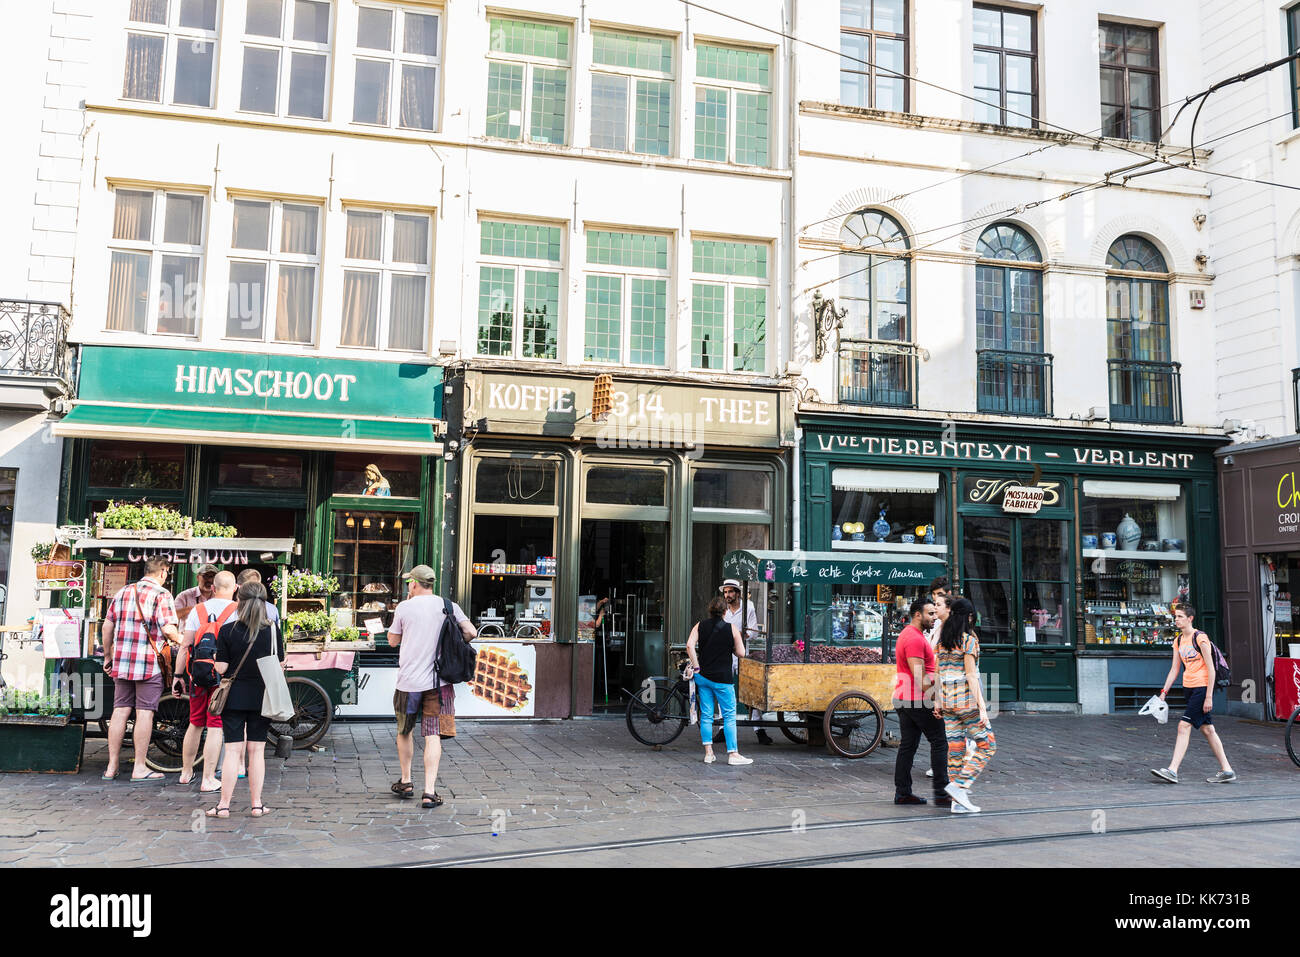 Gand, Belgique - 28 août 2017 : stand de bonbons dans la rue avec les gens autour de la vieille ville de la ville médiévale de Gand, Belgique Banque D'Images